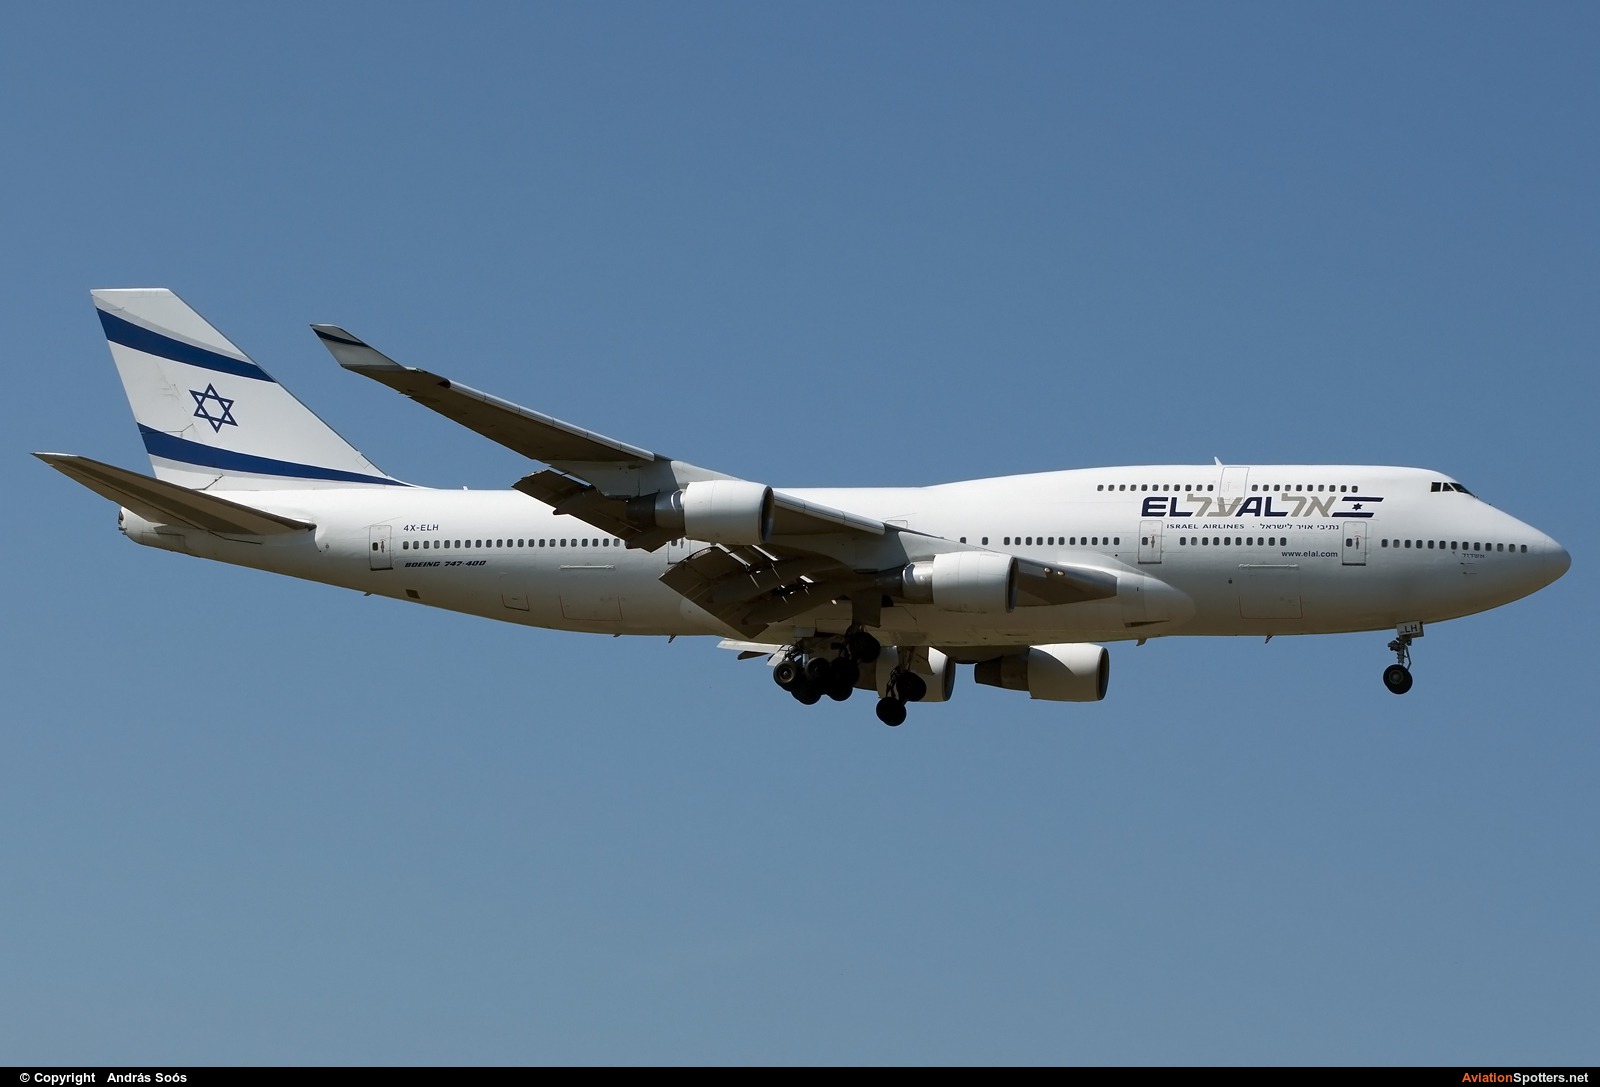 El Al Israel Airlines  -  747-400  (4X-ELH) By András Soós (sas1965)